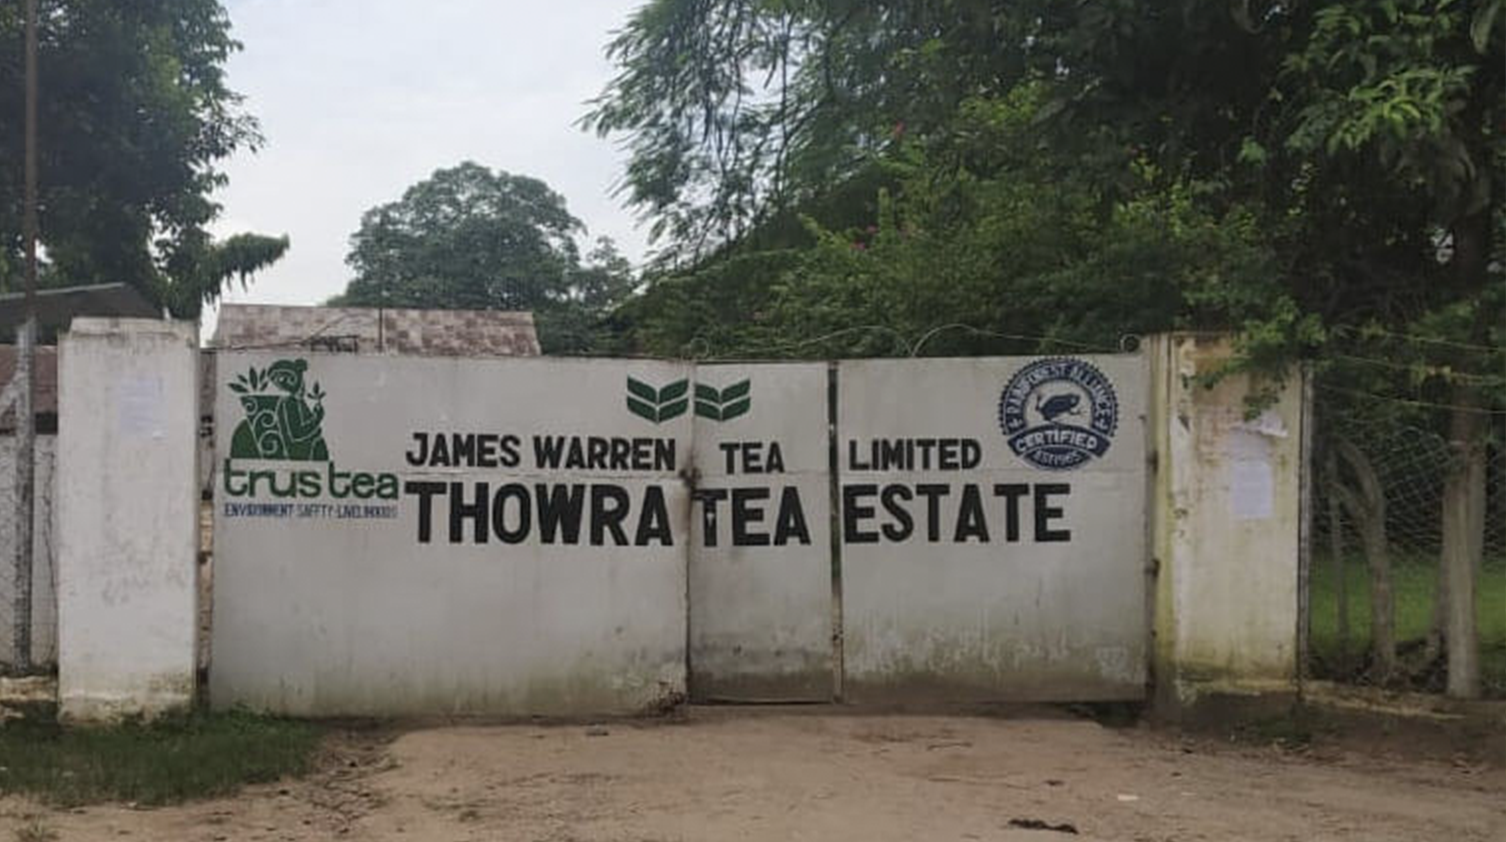 The gates of assam thowra tea estate